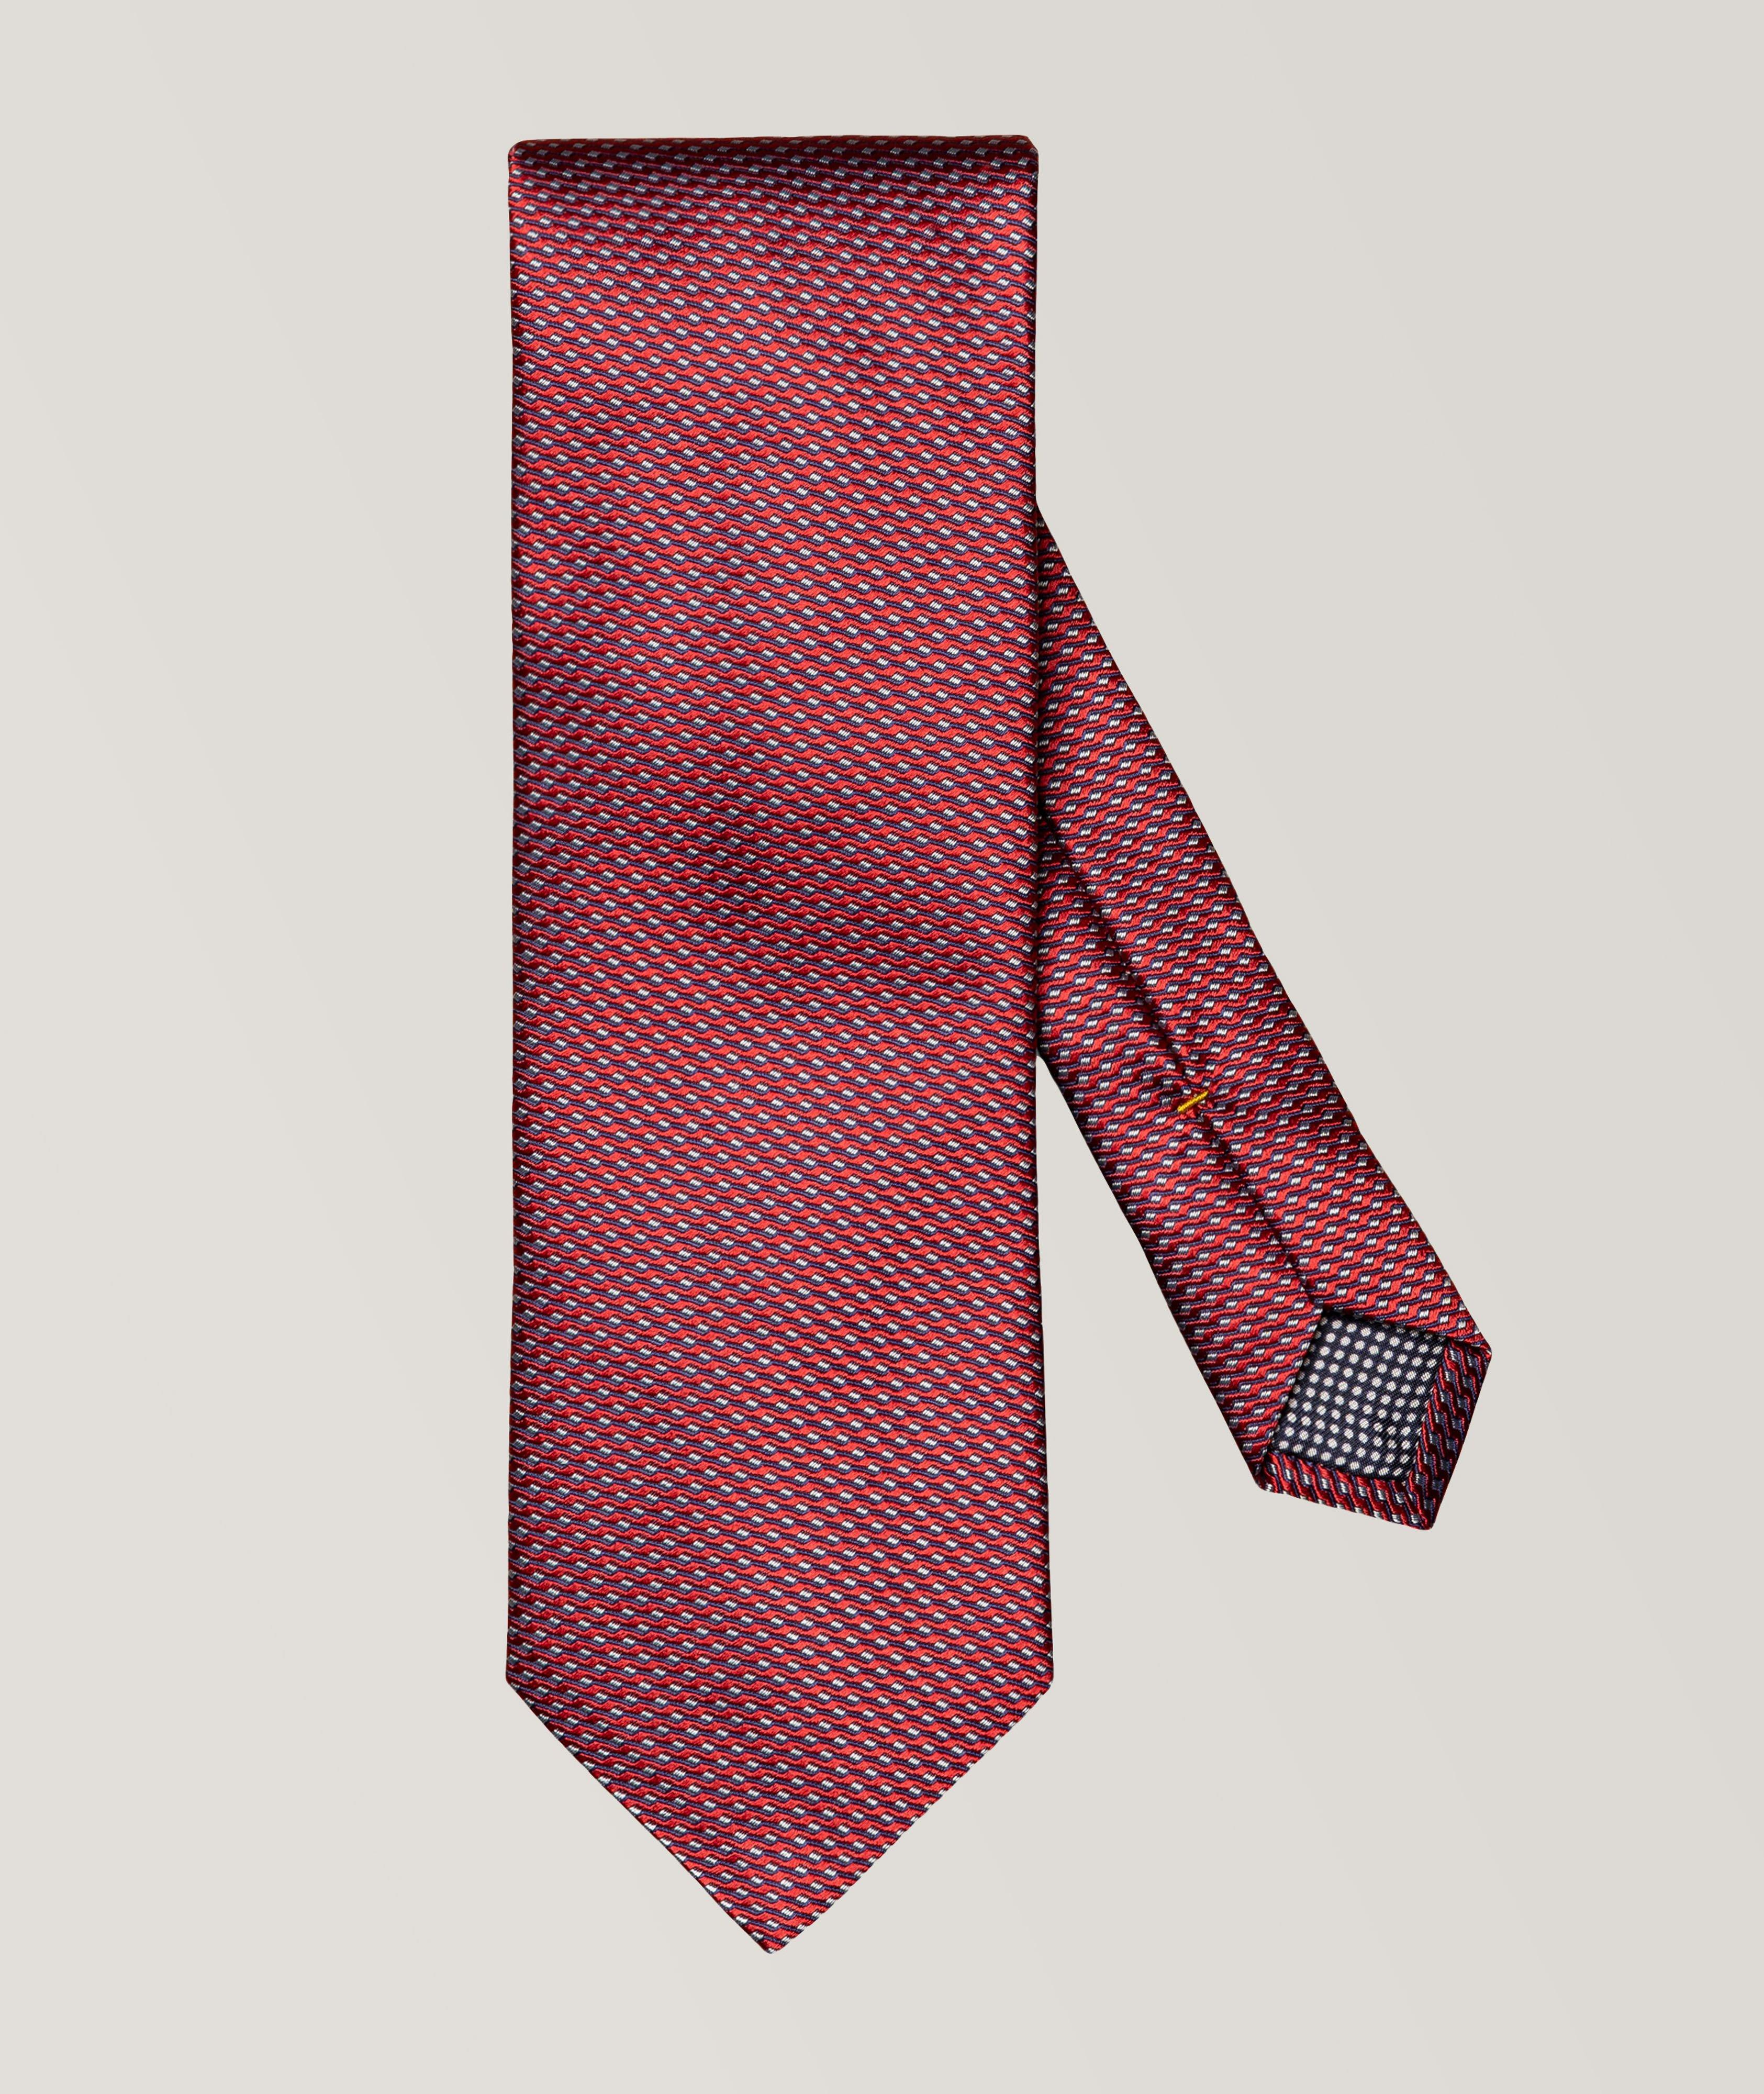 Cravate en soie à motif ondulé image 0